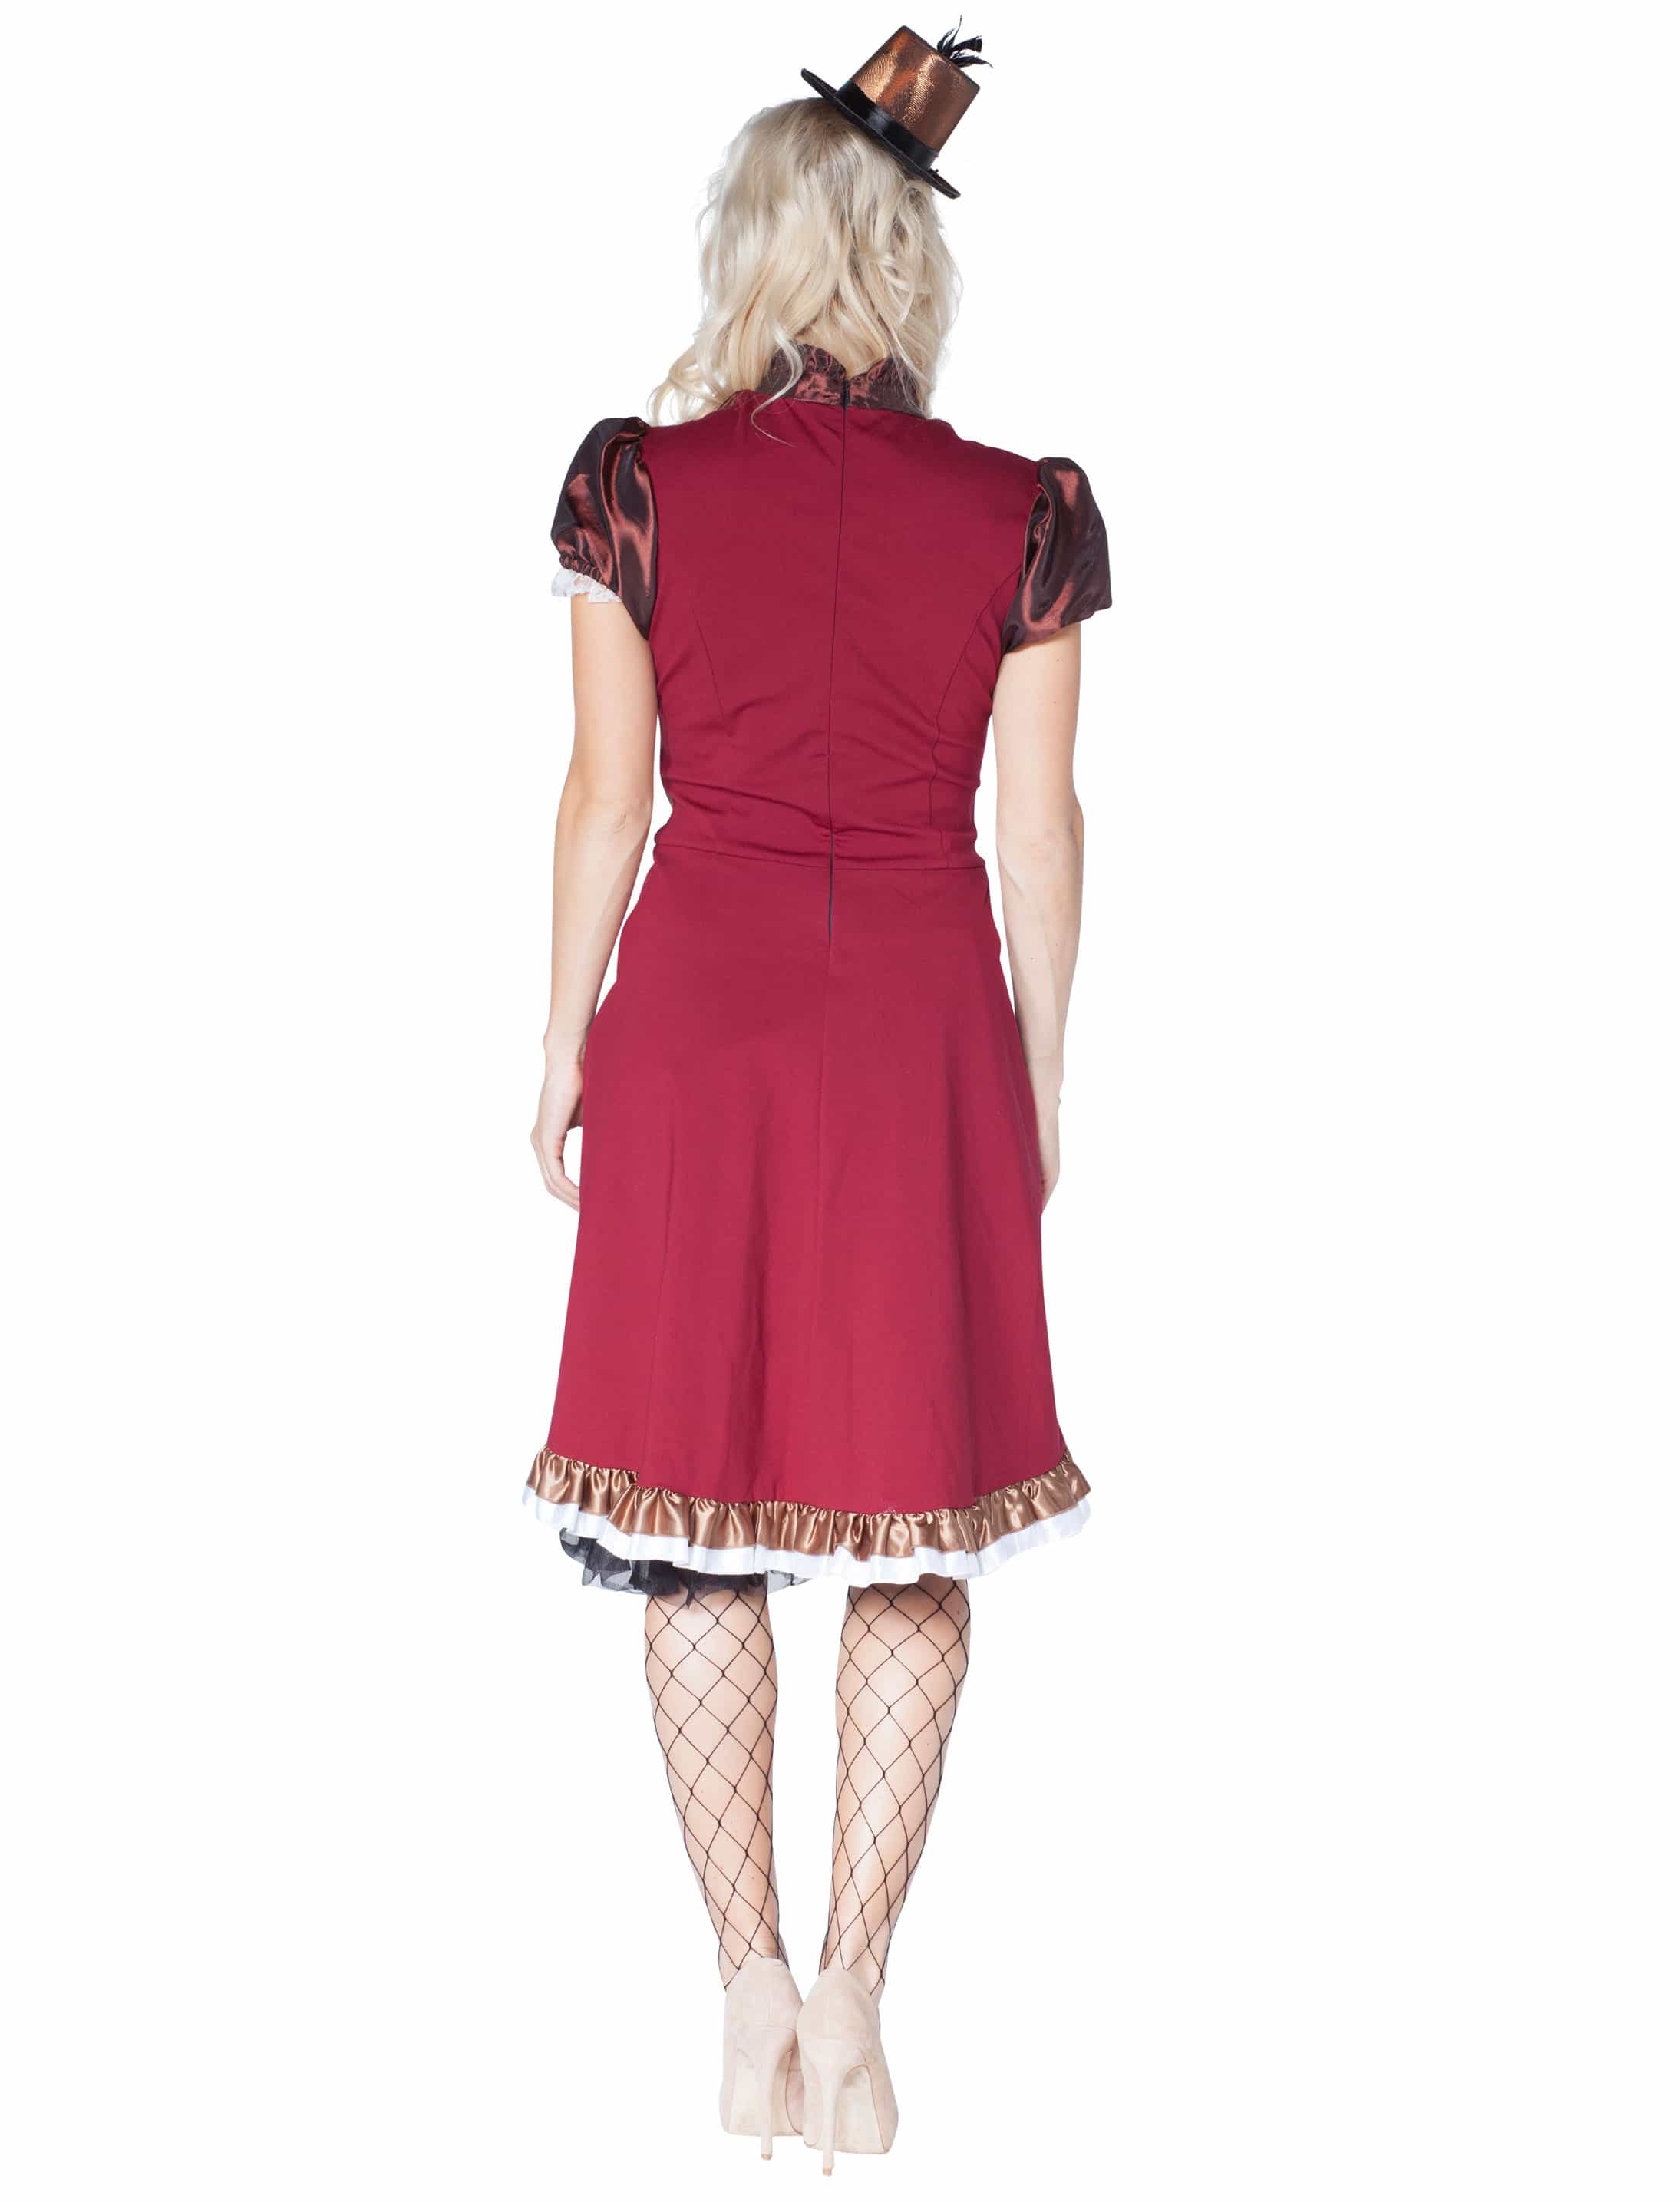 Kleid Steampunk braun/rot 34